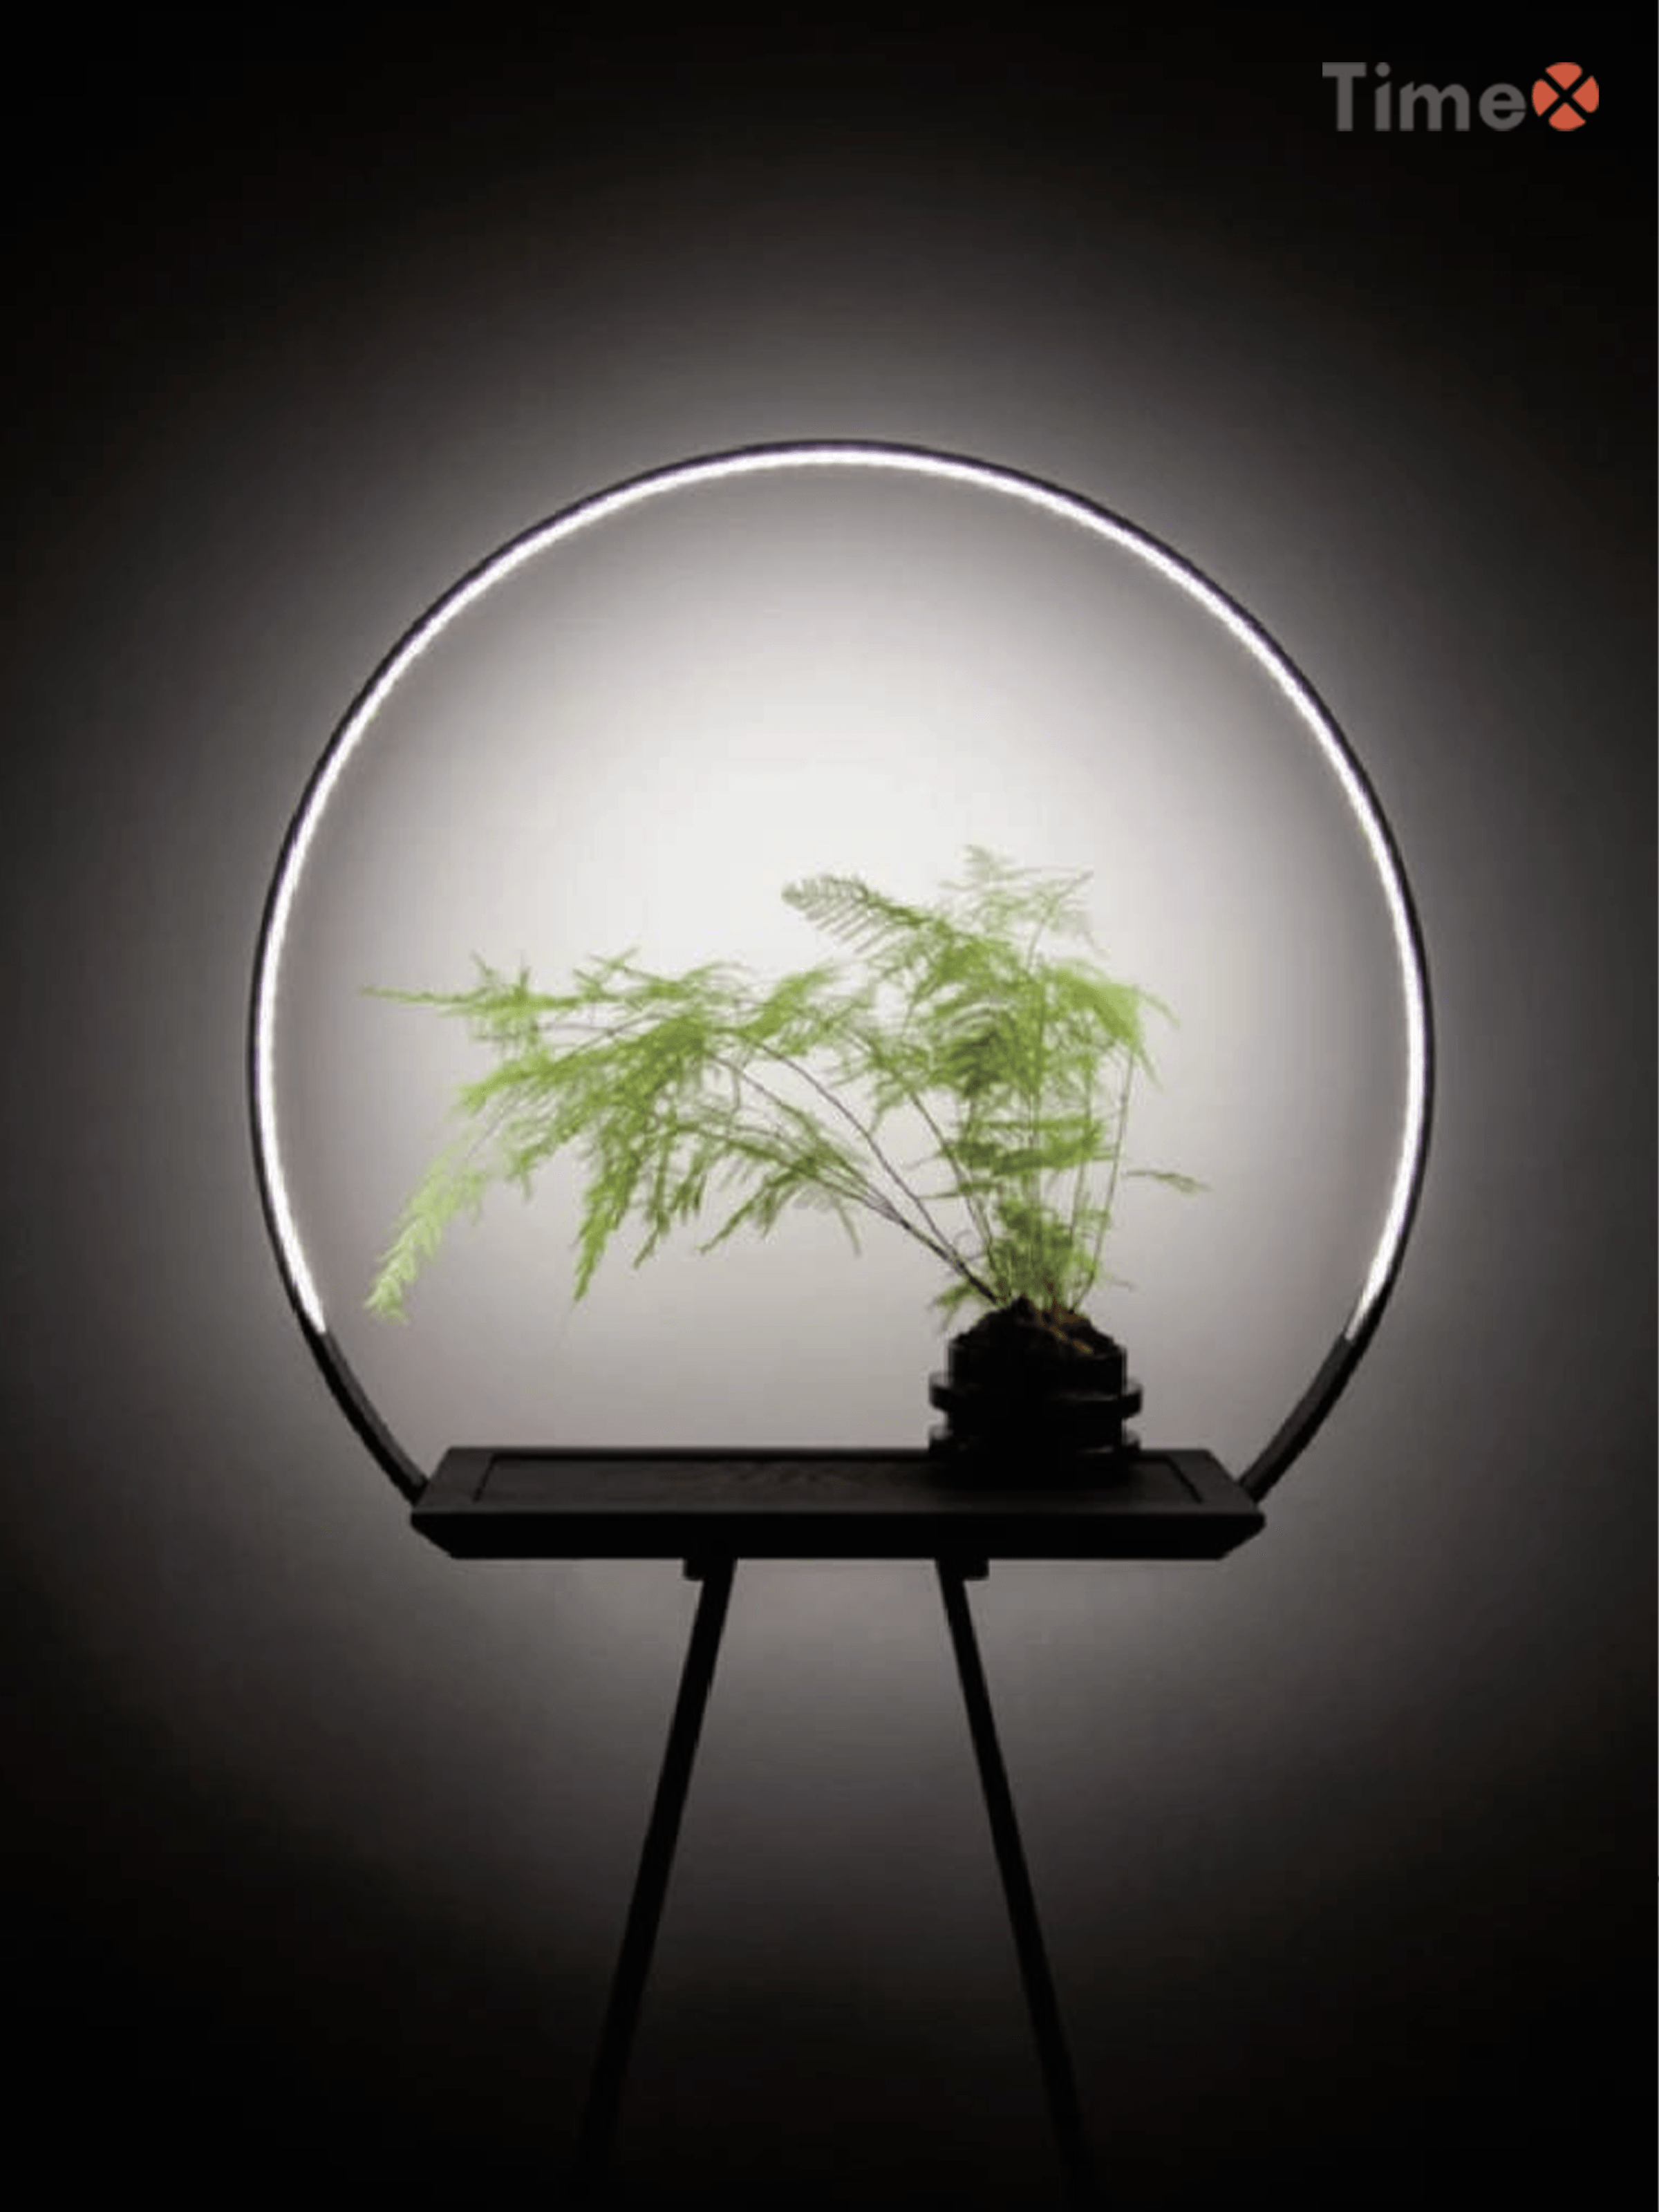 مصابيح معدنية داخلية تساعد على نمو النباتات